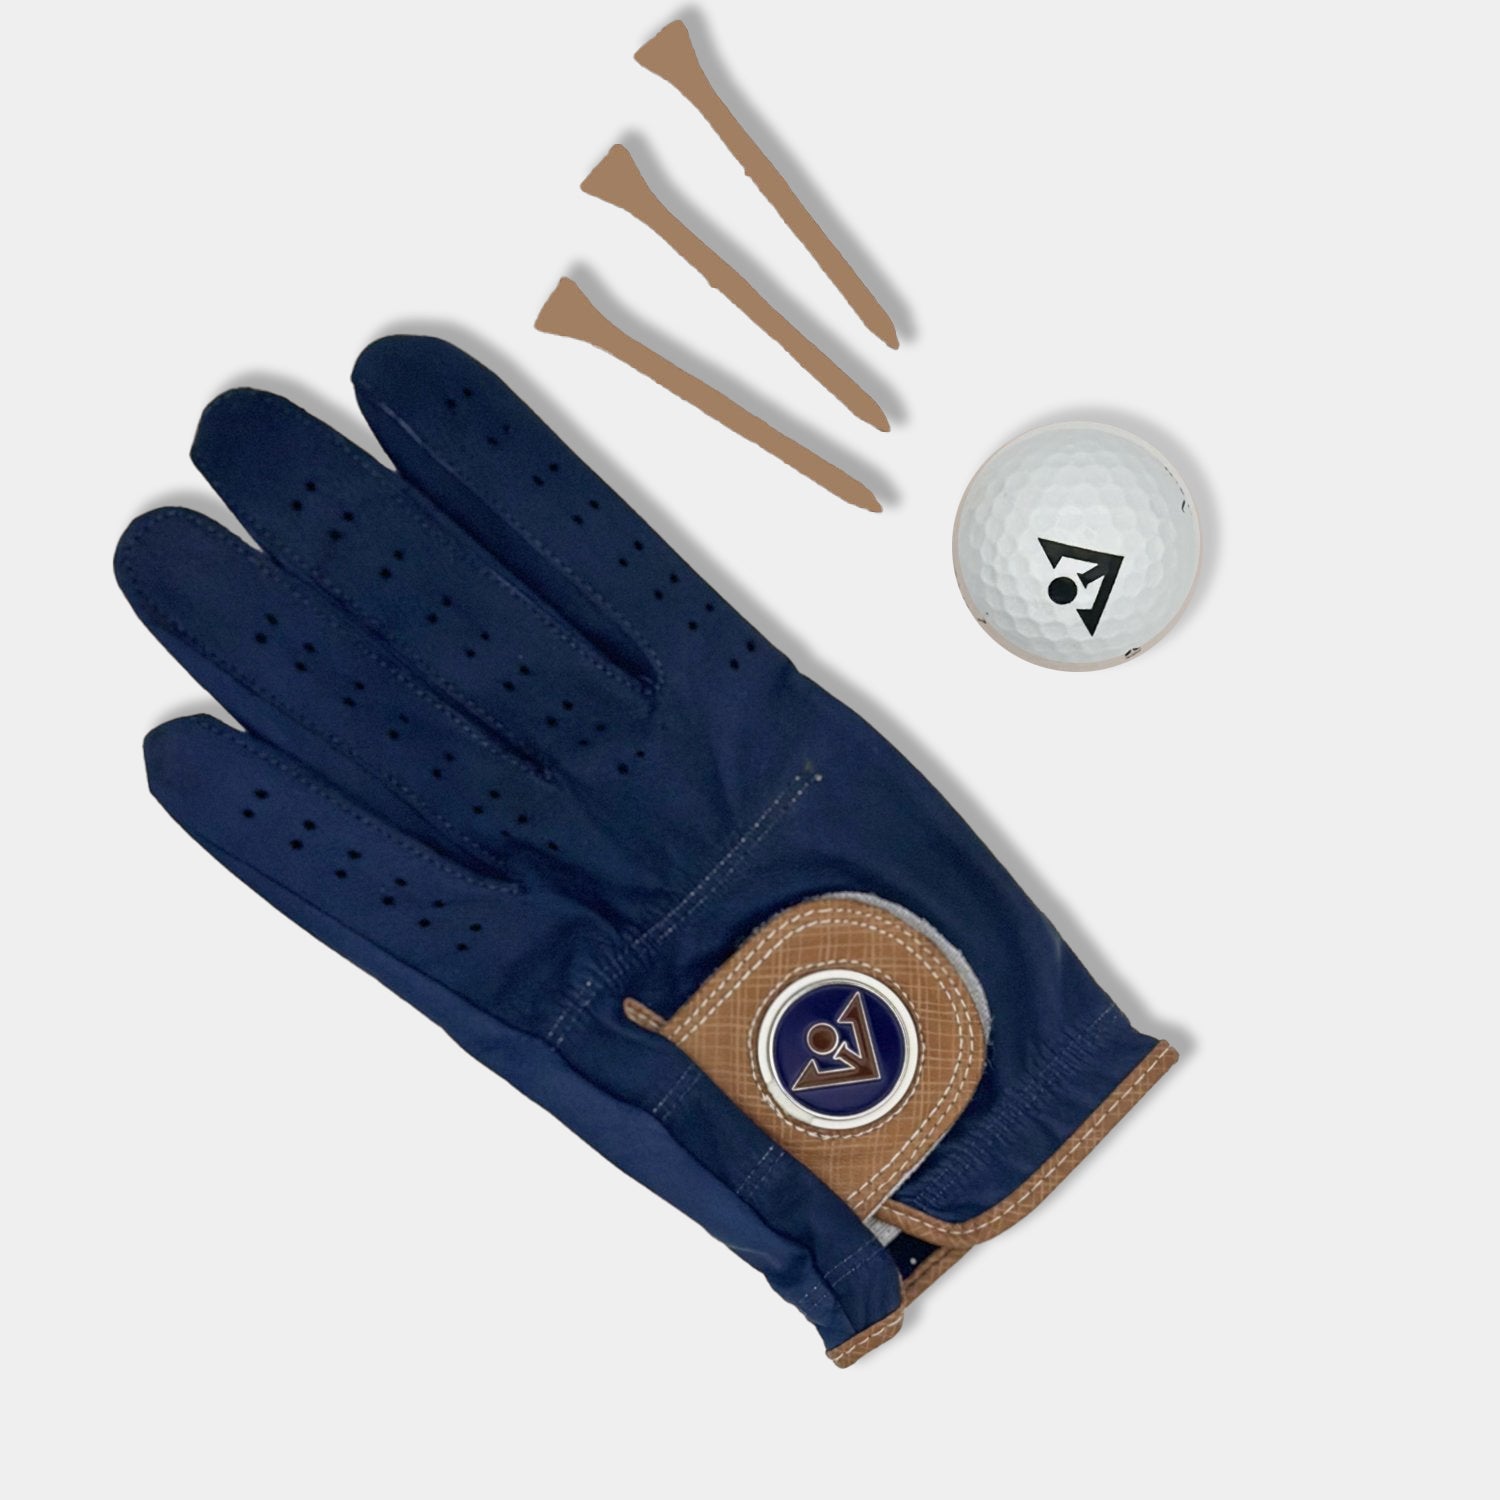 Midnight blue golf glove for women.